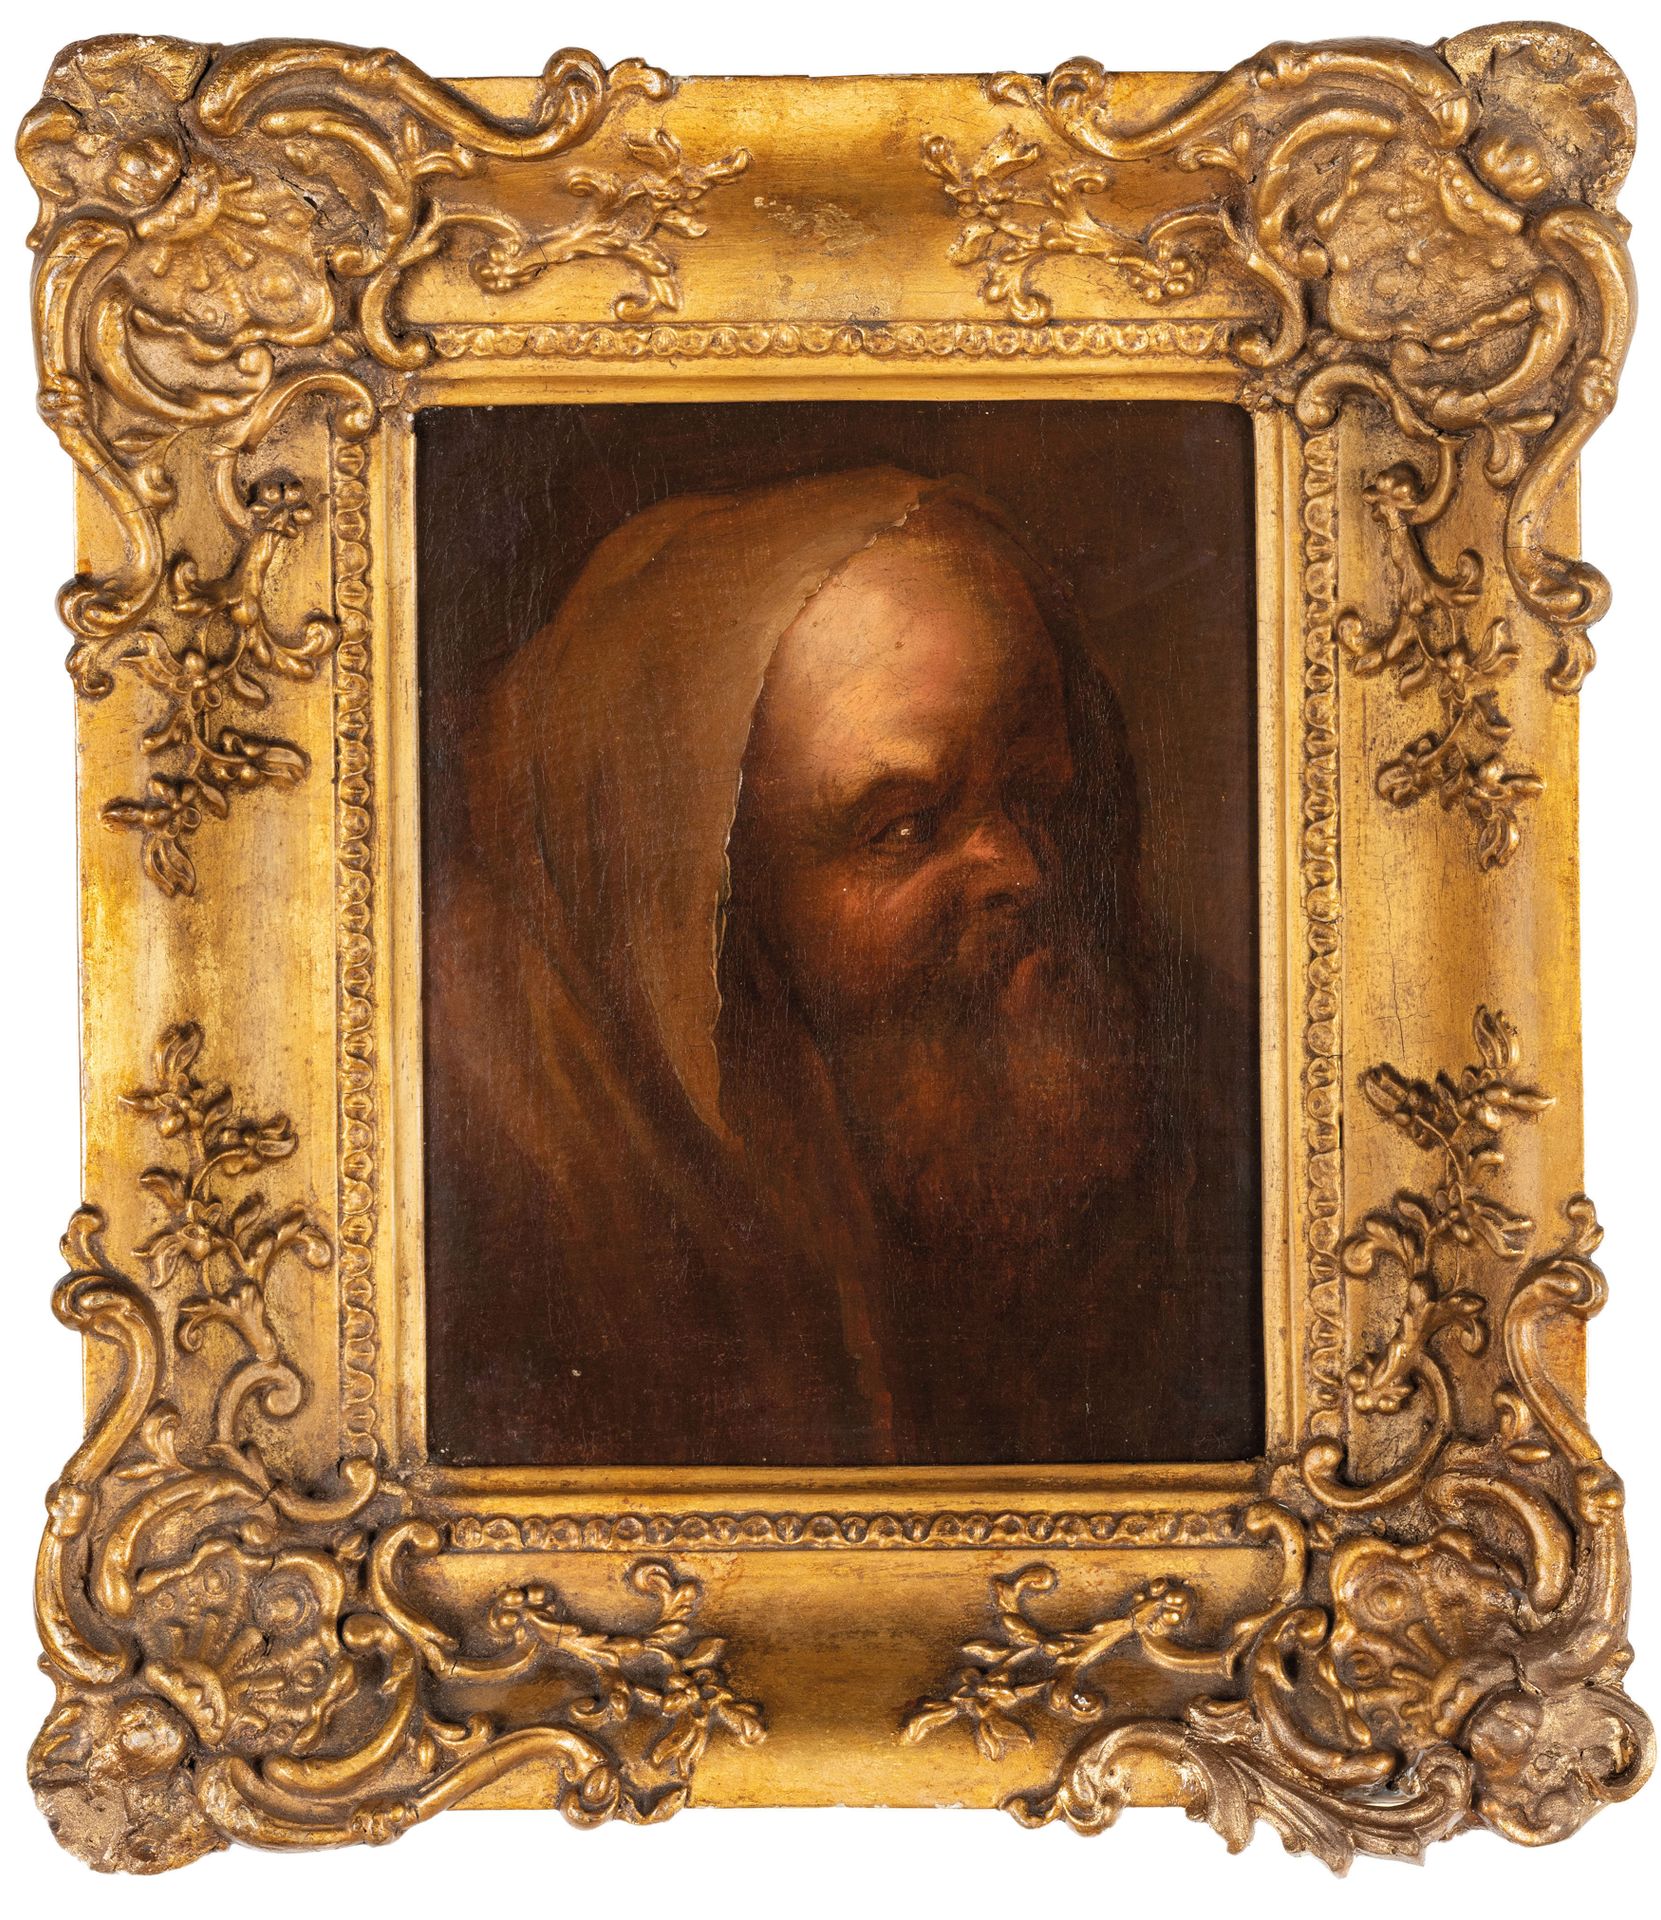 PITTORE DEL XVII-XVIII SECOLO Portrait 
Huile sur toile, 23X19 cm